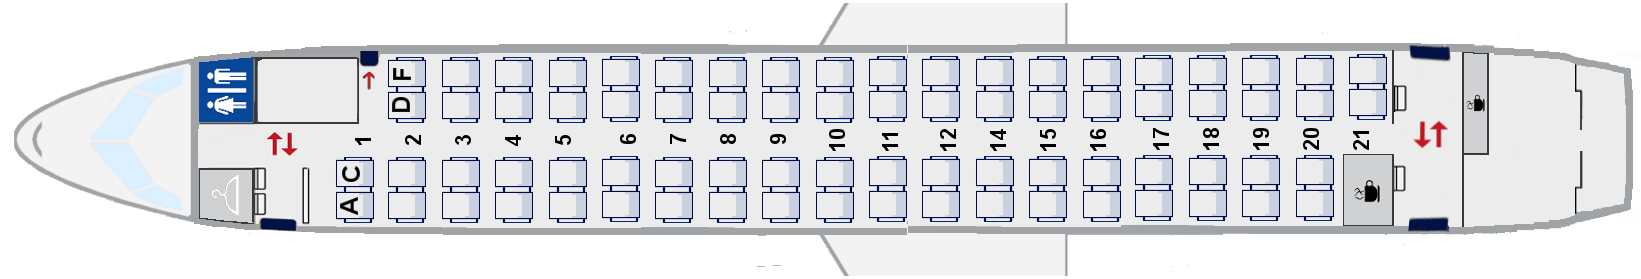 Q400-plan-sjedala